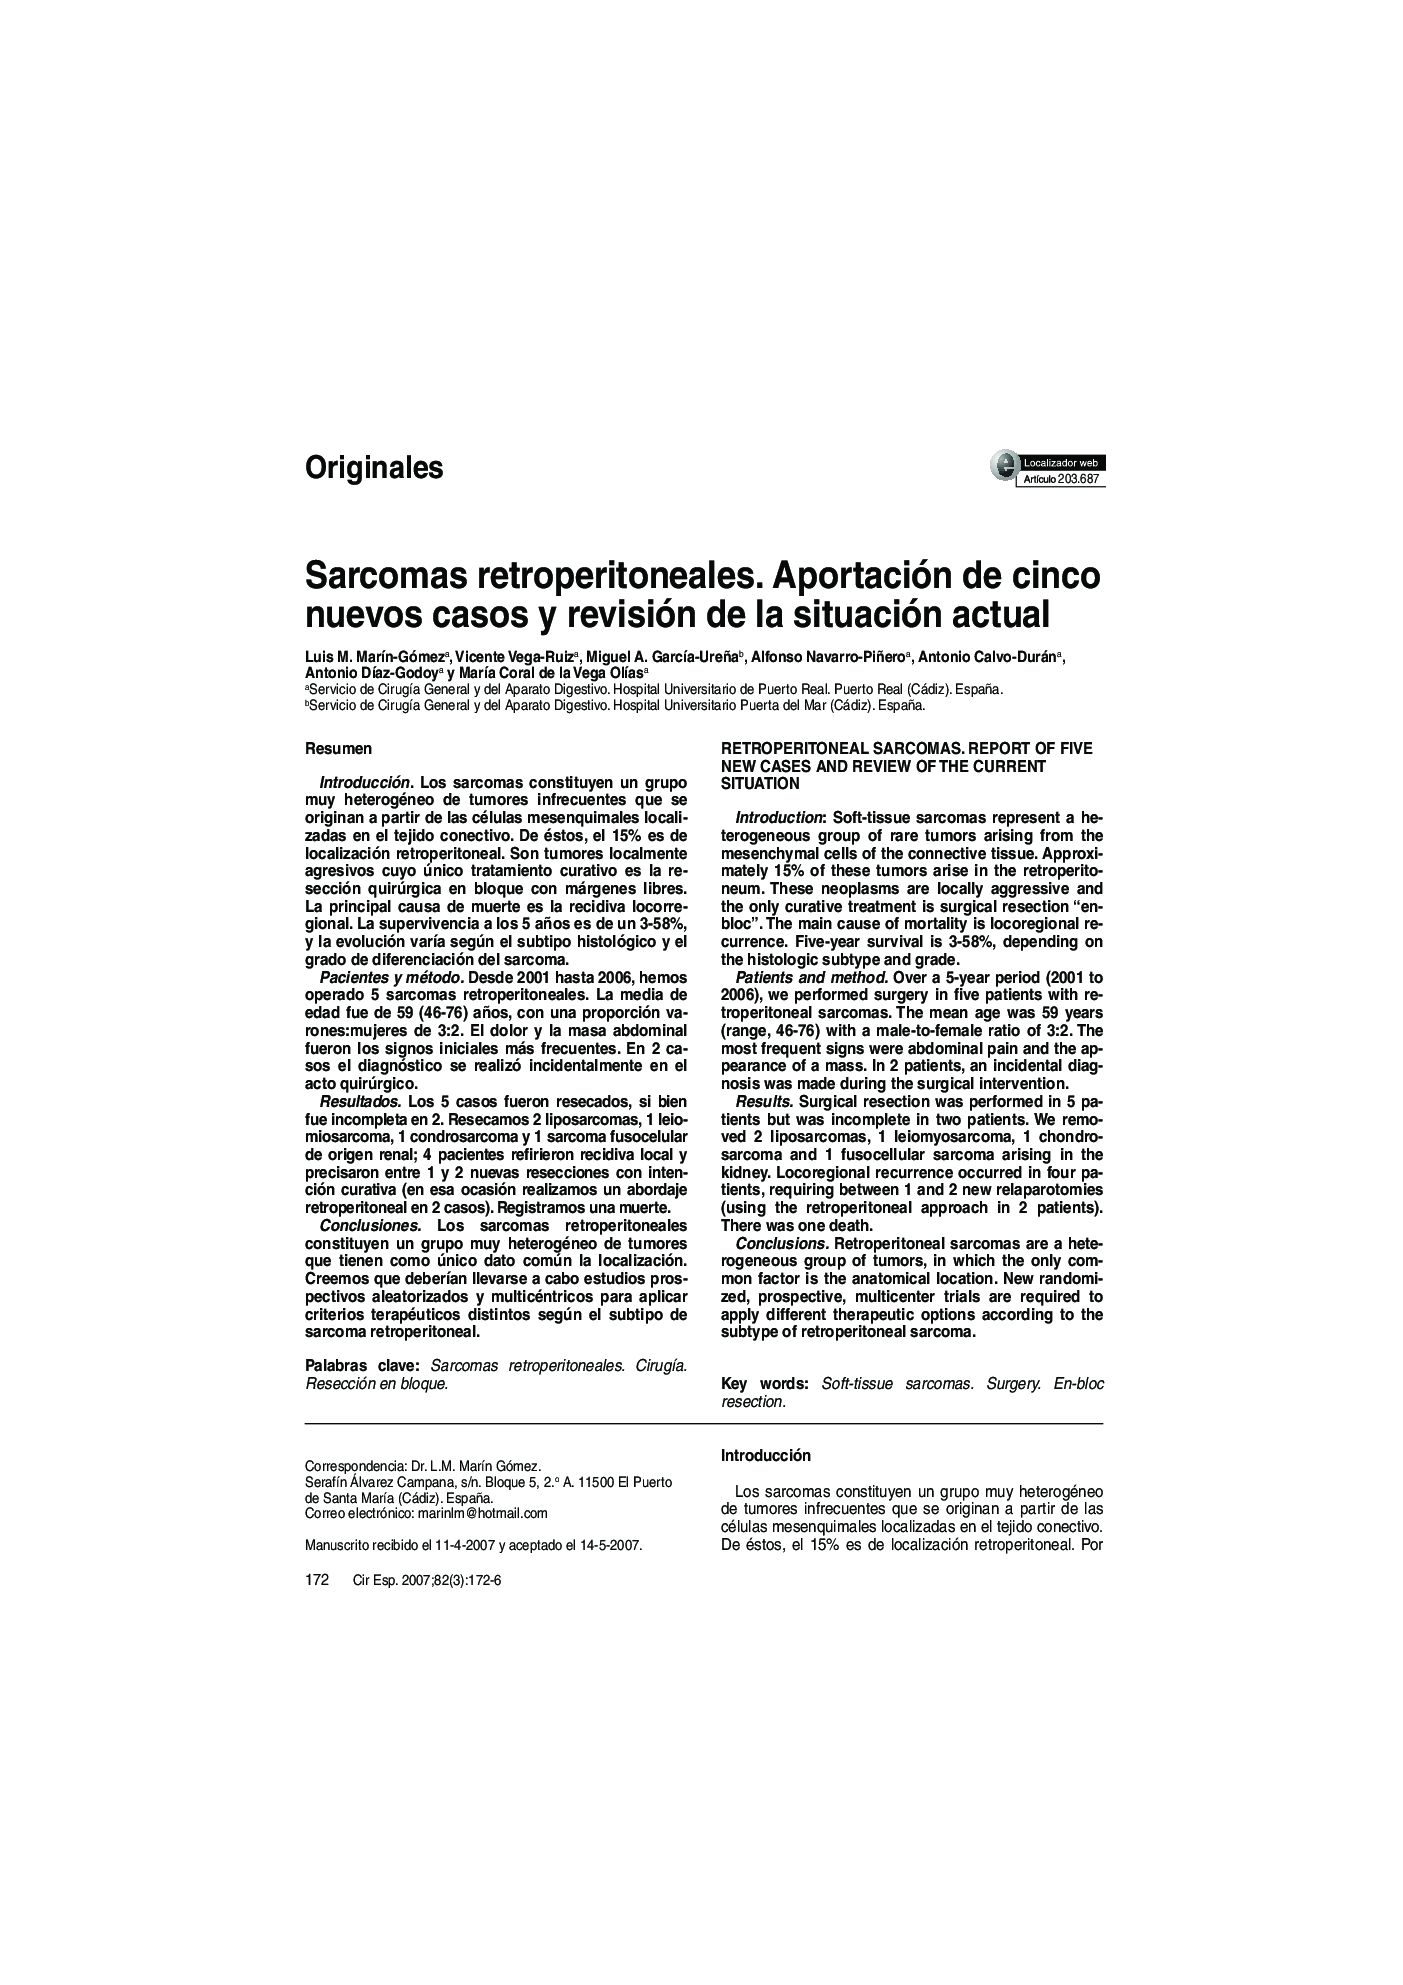 Sarcomas retroperitoneales. Aportación de cinco nuevos casos y revisión de la situación actual